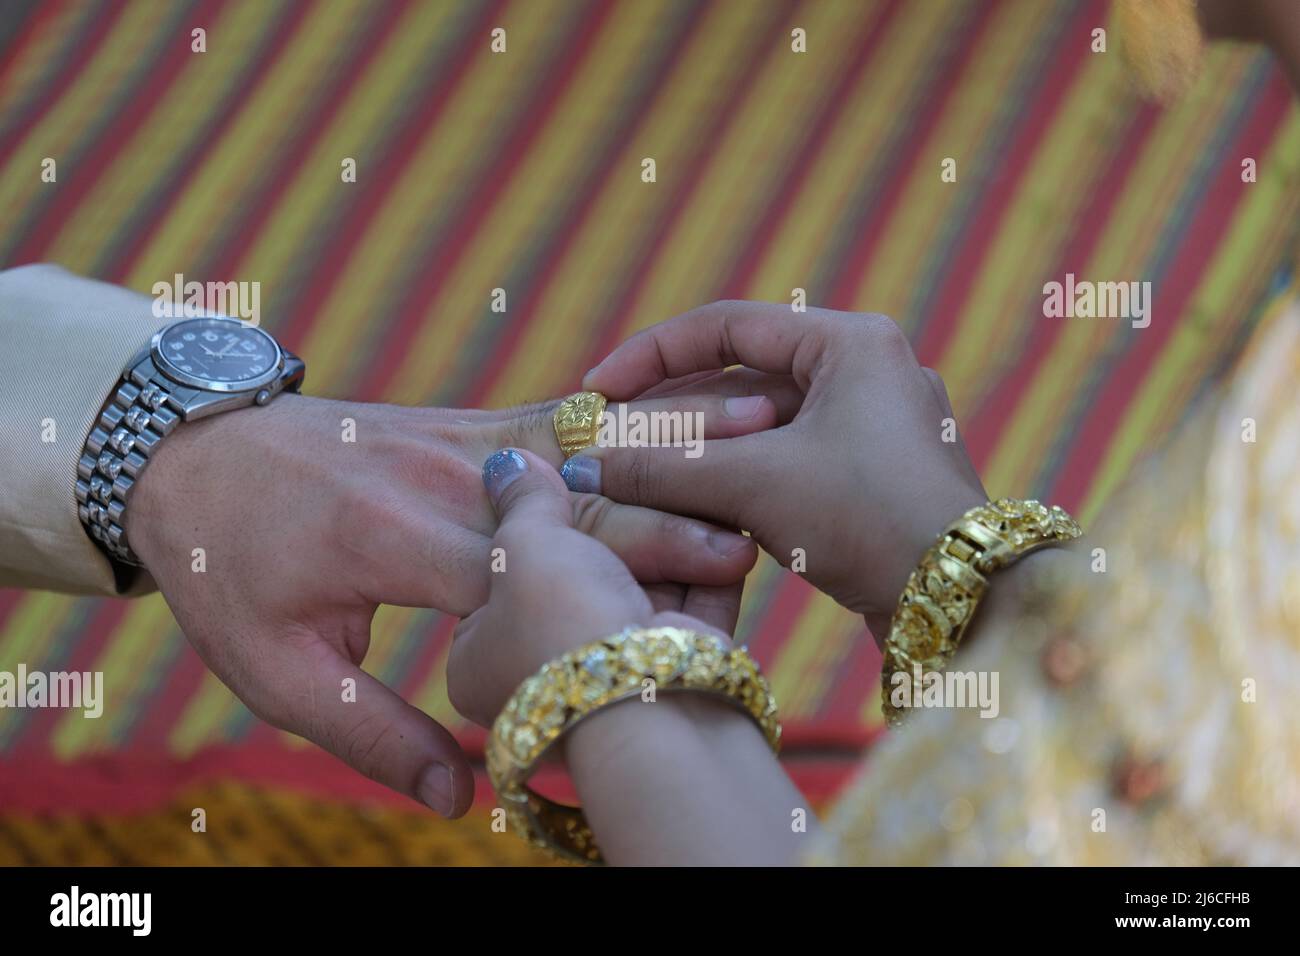 Thailändische Hochzeit: Die üppig geschmückte Braut legt einen goldenen Ring an den Finger des Bräutigams Stockfoto